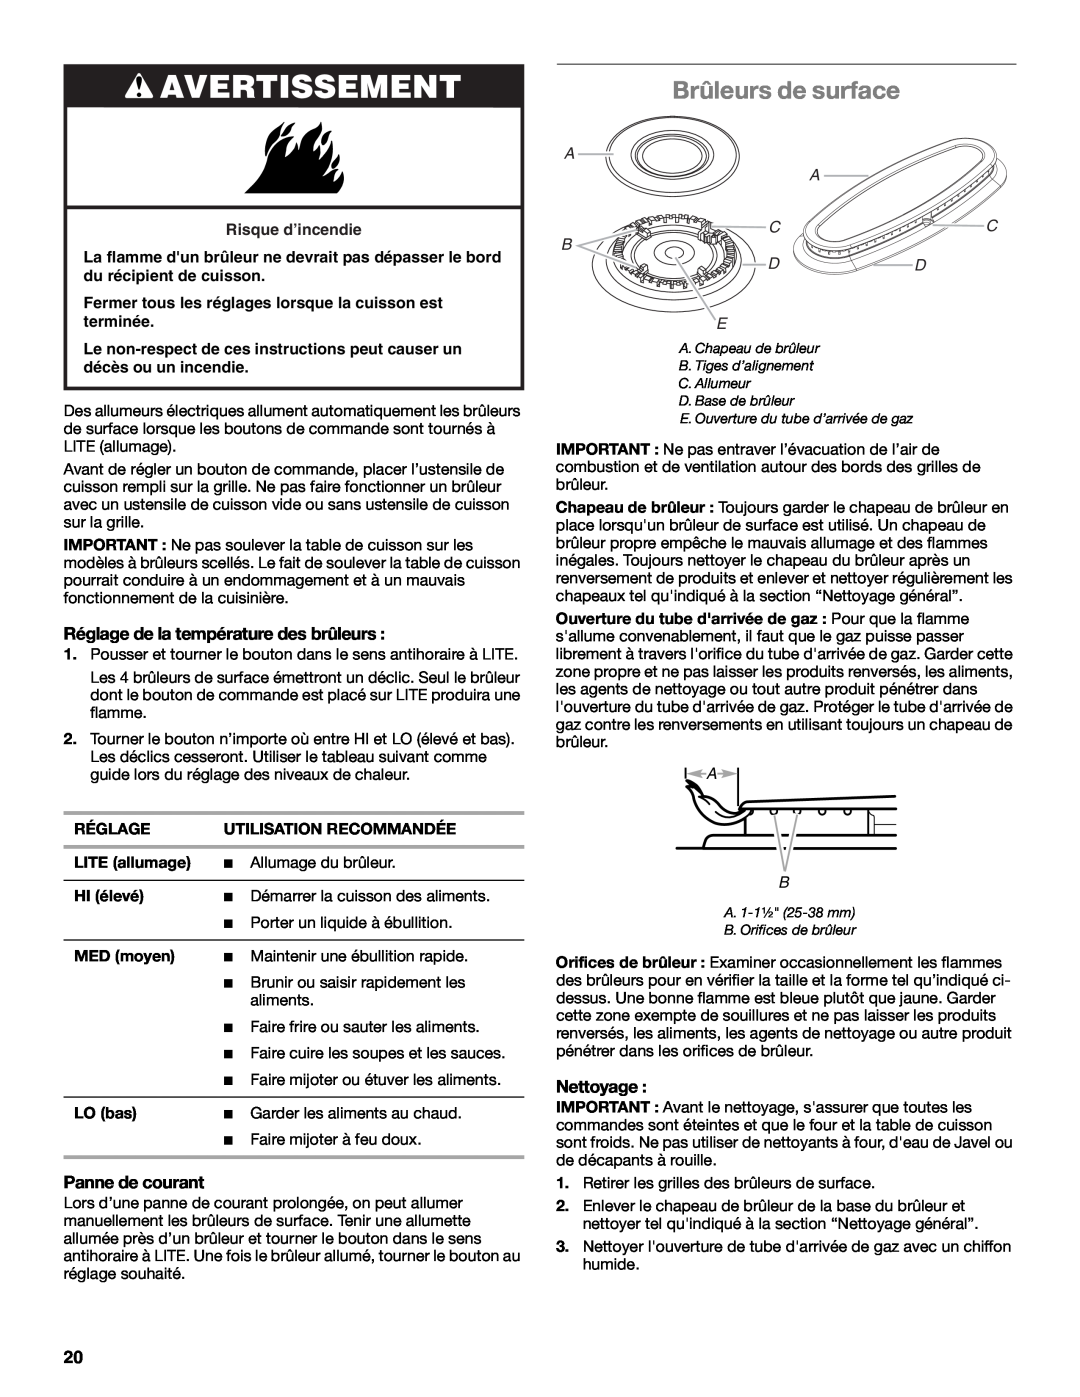 Whirlpool WFG231LVS manual Brûleurs de surface, Avertissement, Réglage de la température des brûleurs, Panne de courant 